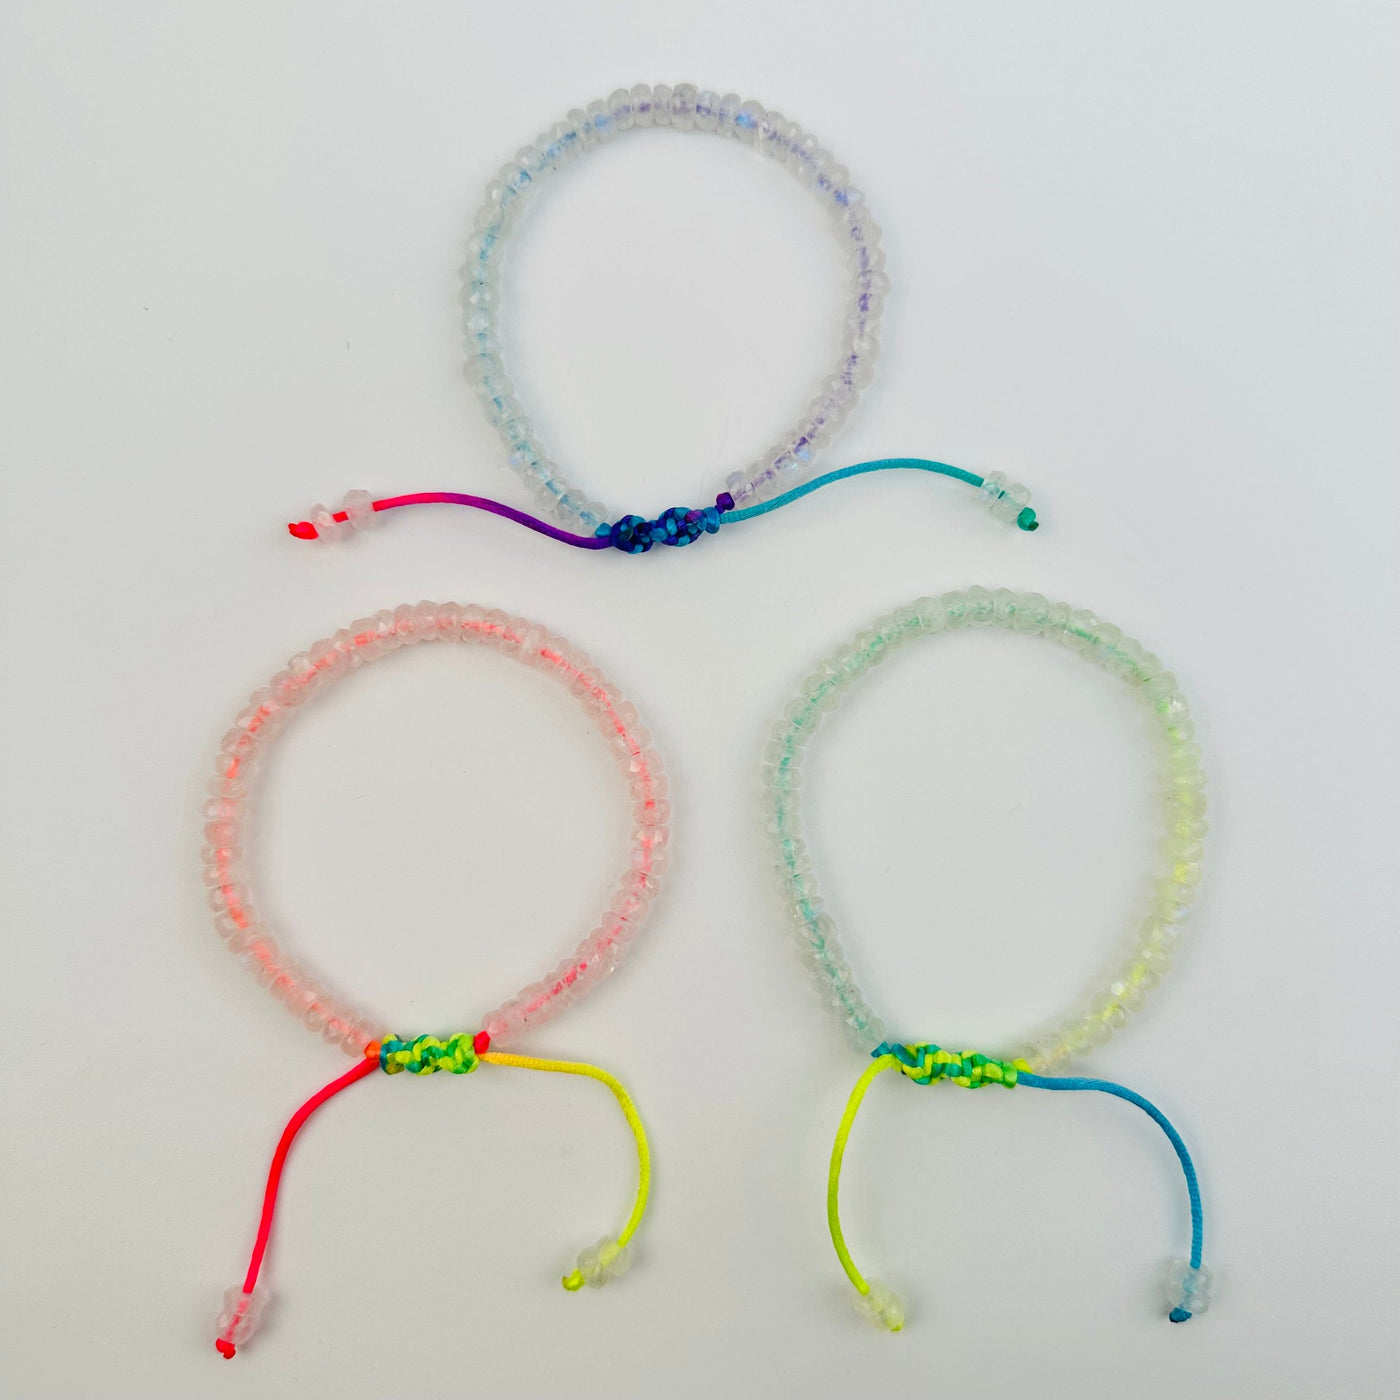 bracelets come with an adjustable slide string